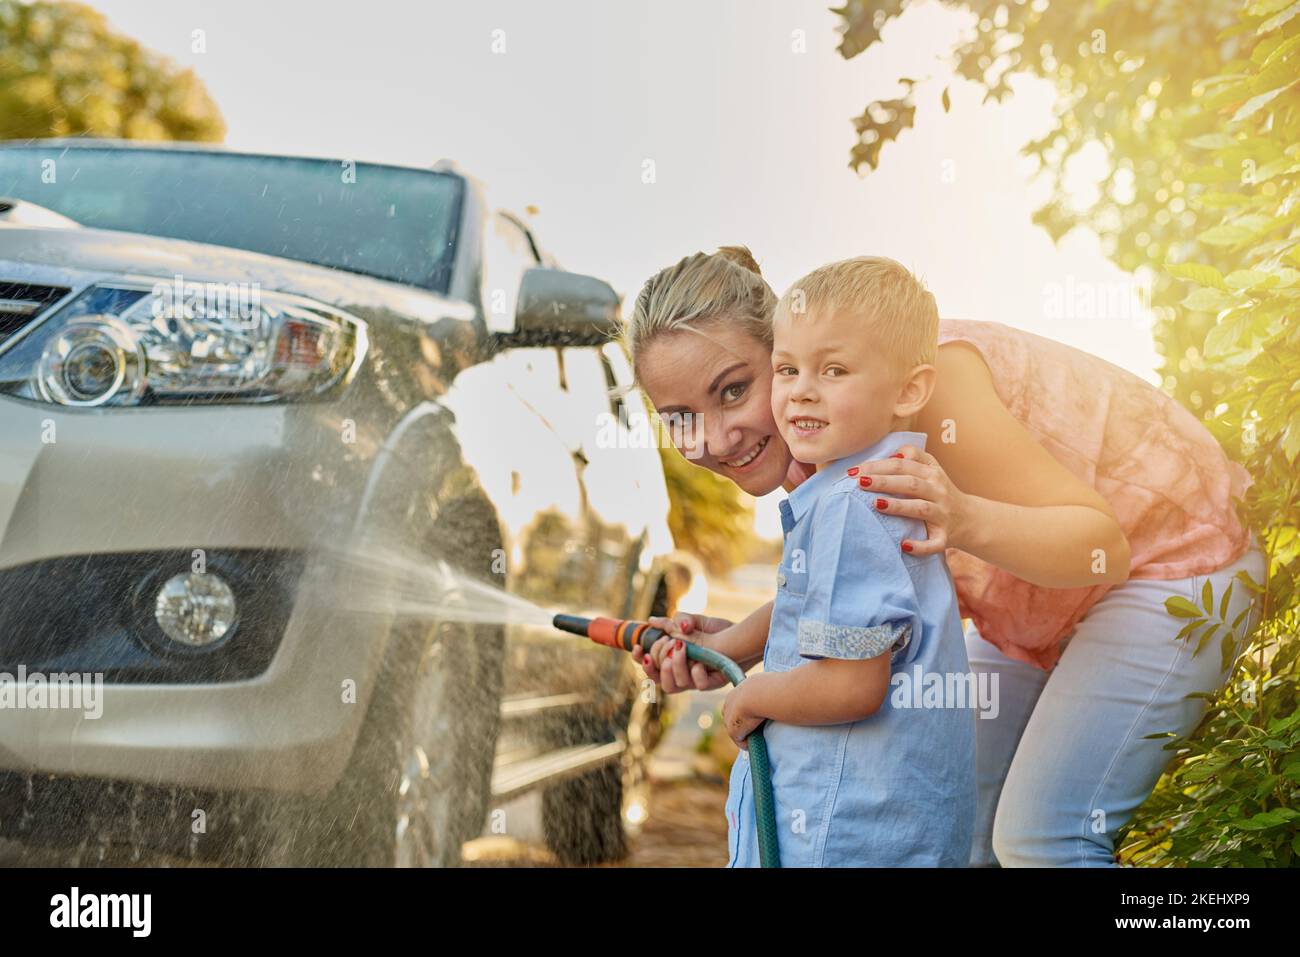 Das Auto zusammen mit dem Schlauchschaufeln abschmieren. Porträt einer Mutter und eines Sohnes, die zusammen ein Auto waschen. Stockfoto